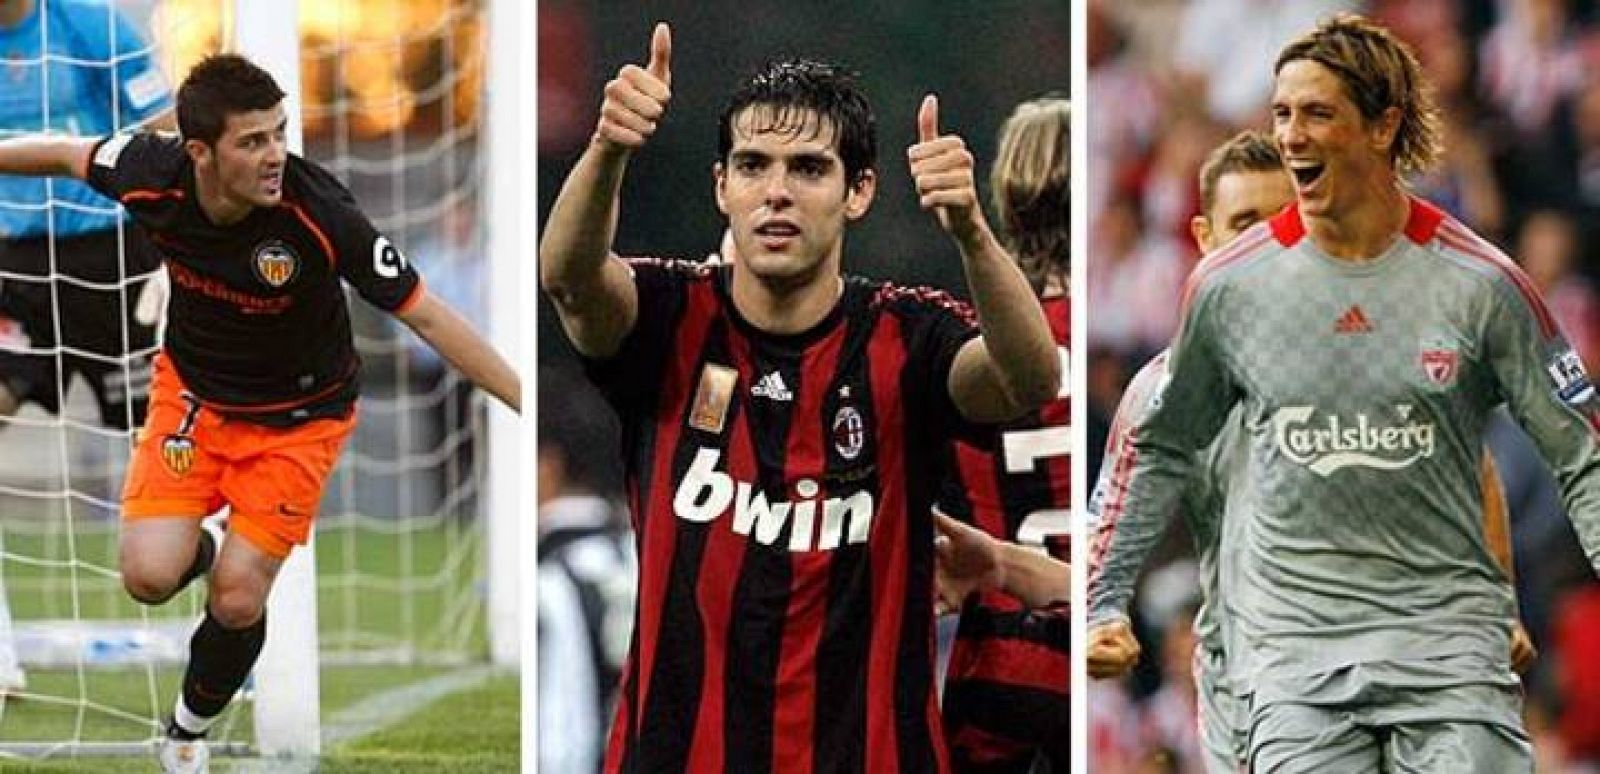 Villa, Kaká y Torres son tres de los futbolistas en el punto de mira del club inglés.